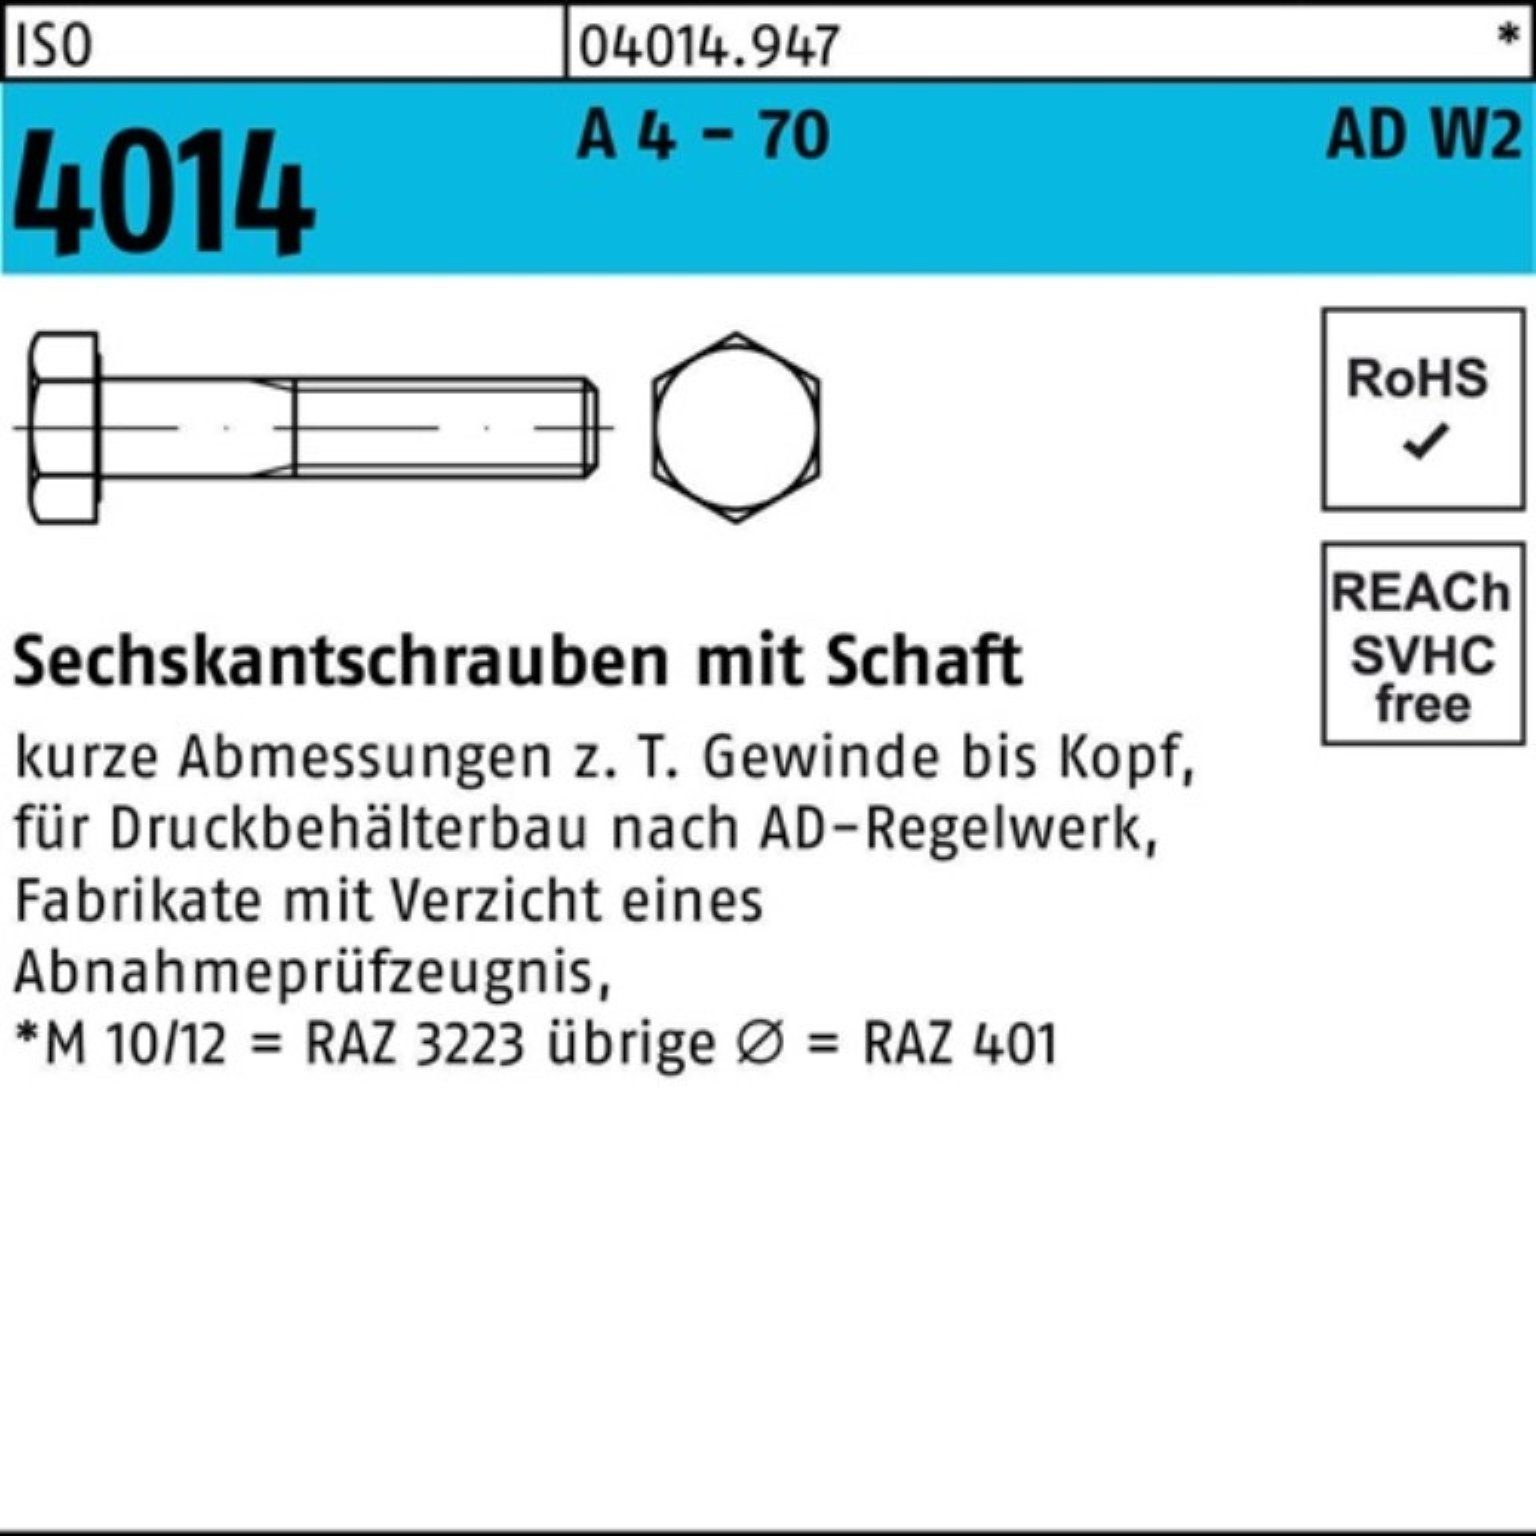 Bufab Sechskantschraube 100er Pack Sechskantschraube ISO 4014 Schaft M12x 100 A 4 - 70 AD-W2 2 | Schrauben